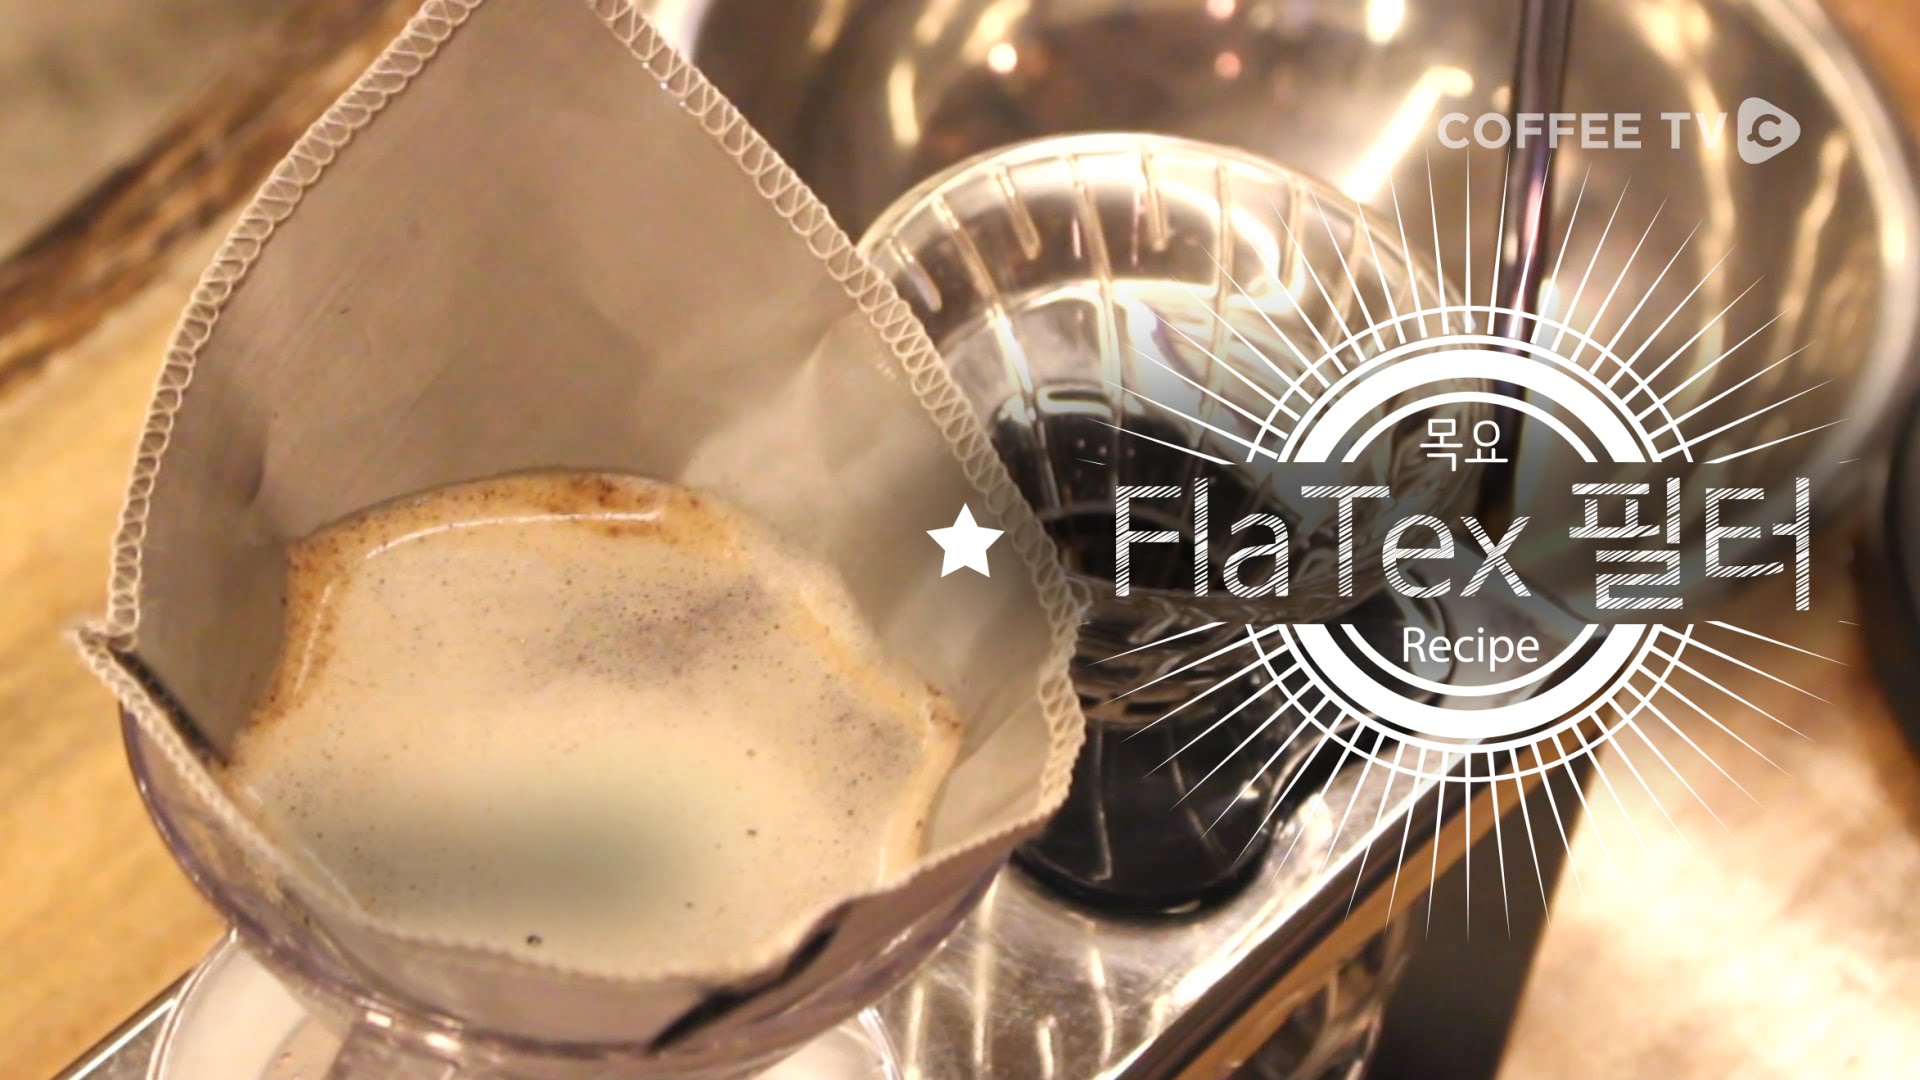 금속필터의 편견을 깨다!'FlaTex'핸드드립 커피